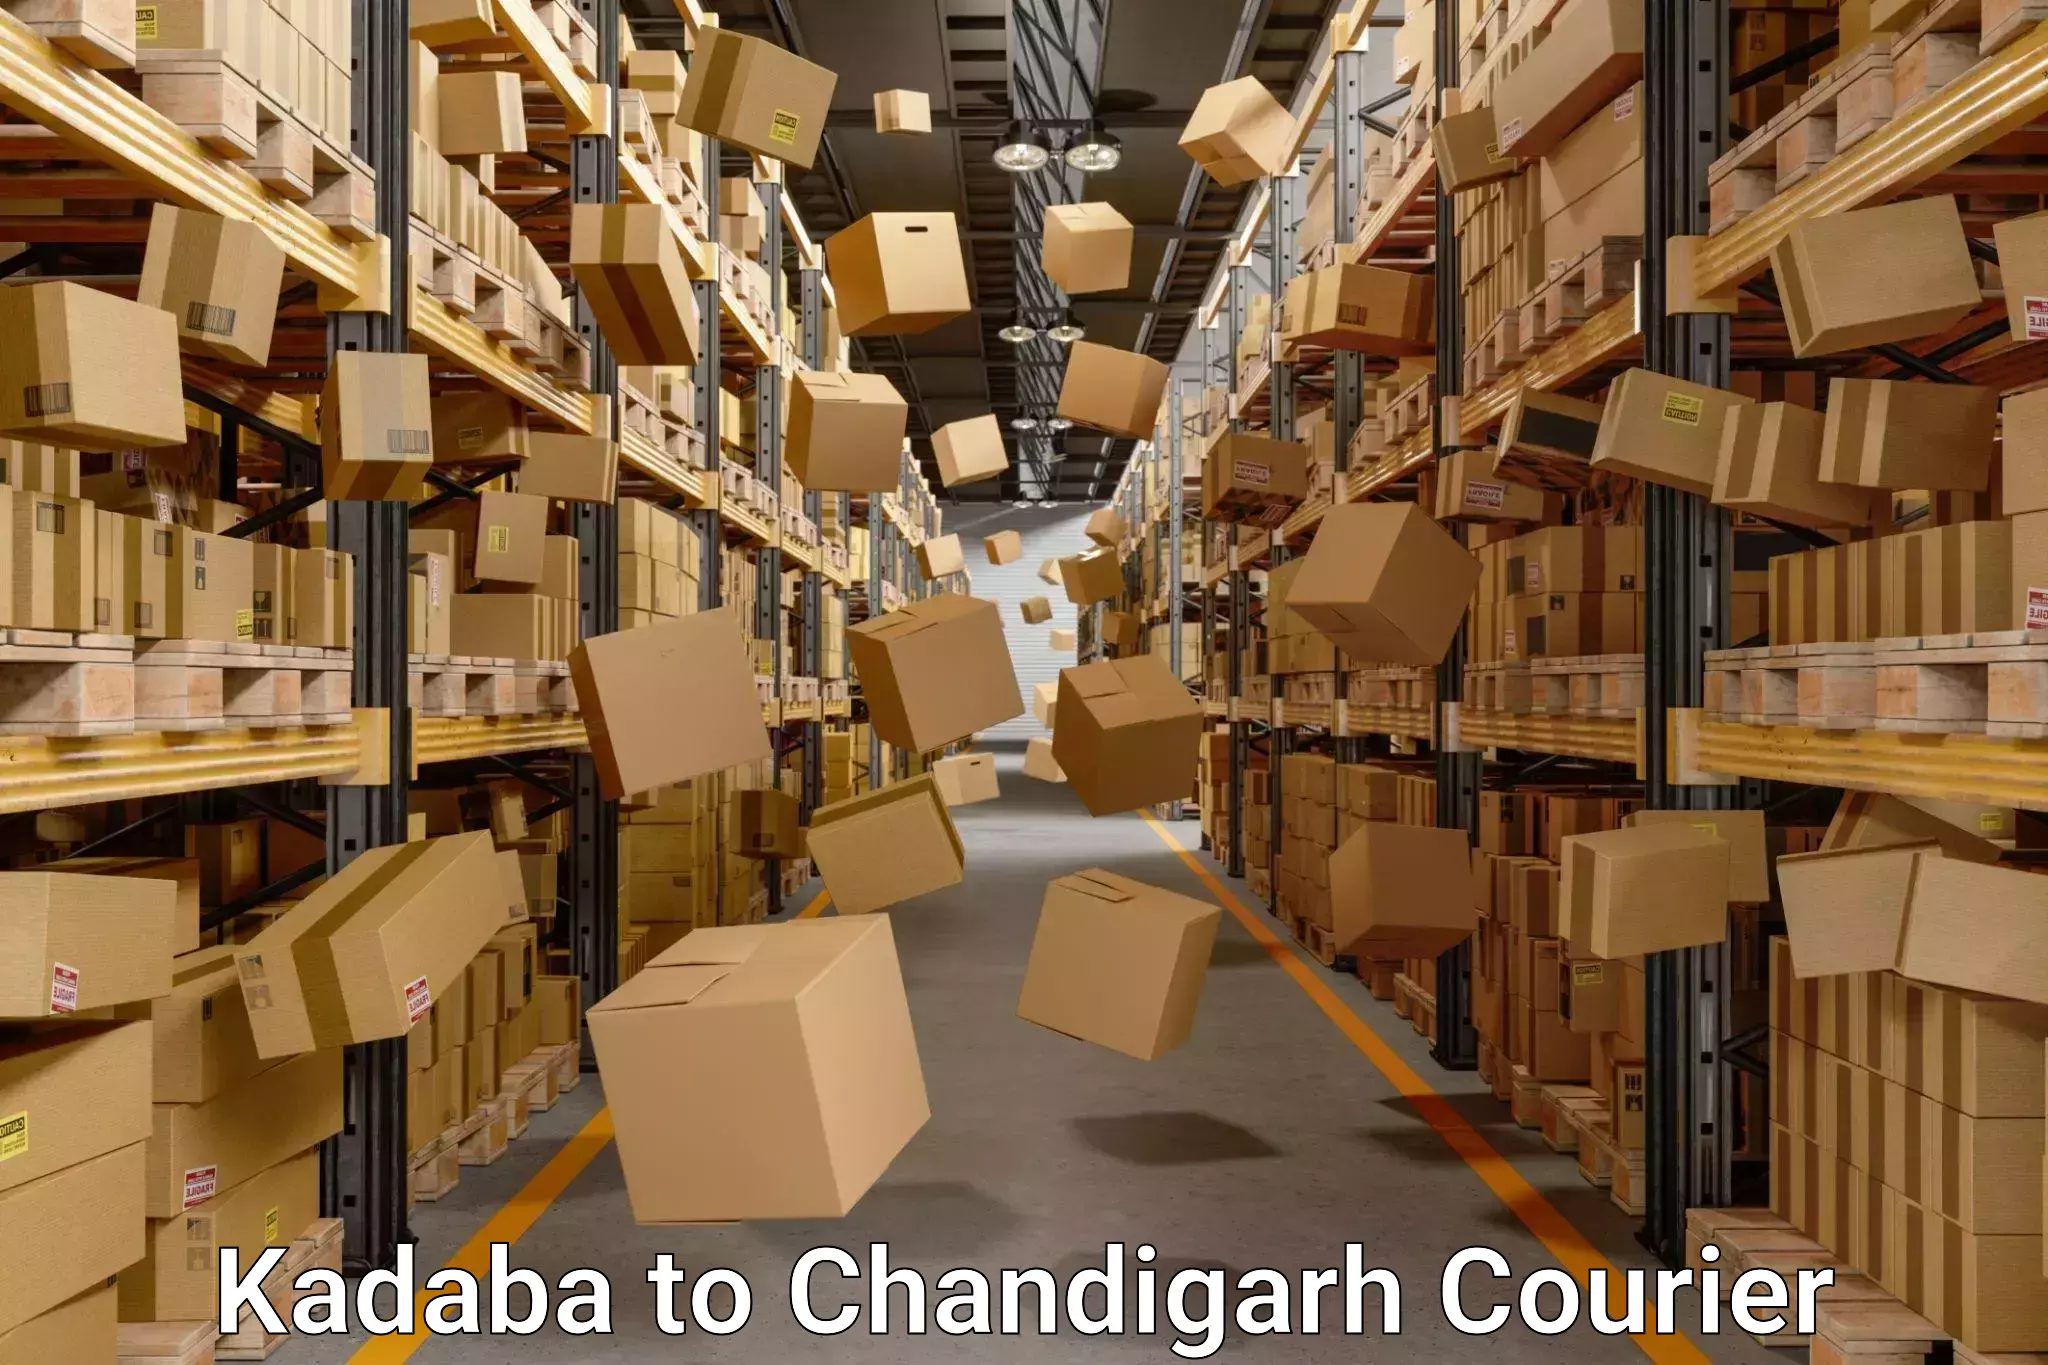 Trusted moving company Kadaba to Panjab University Chandigarh